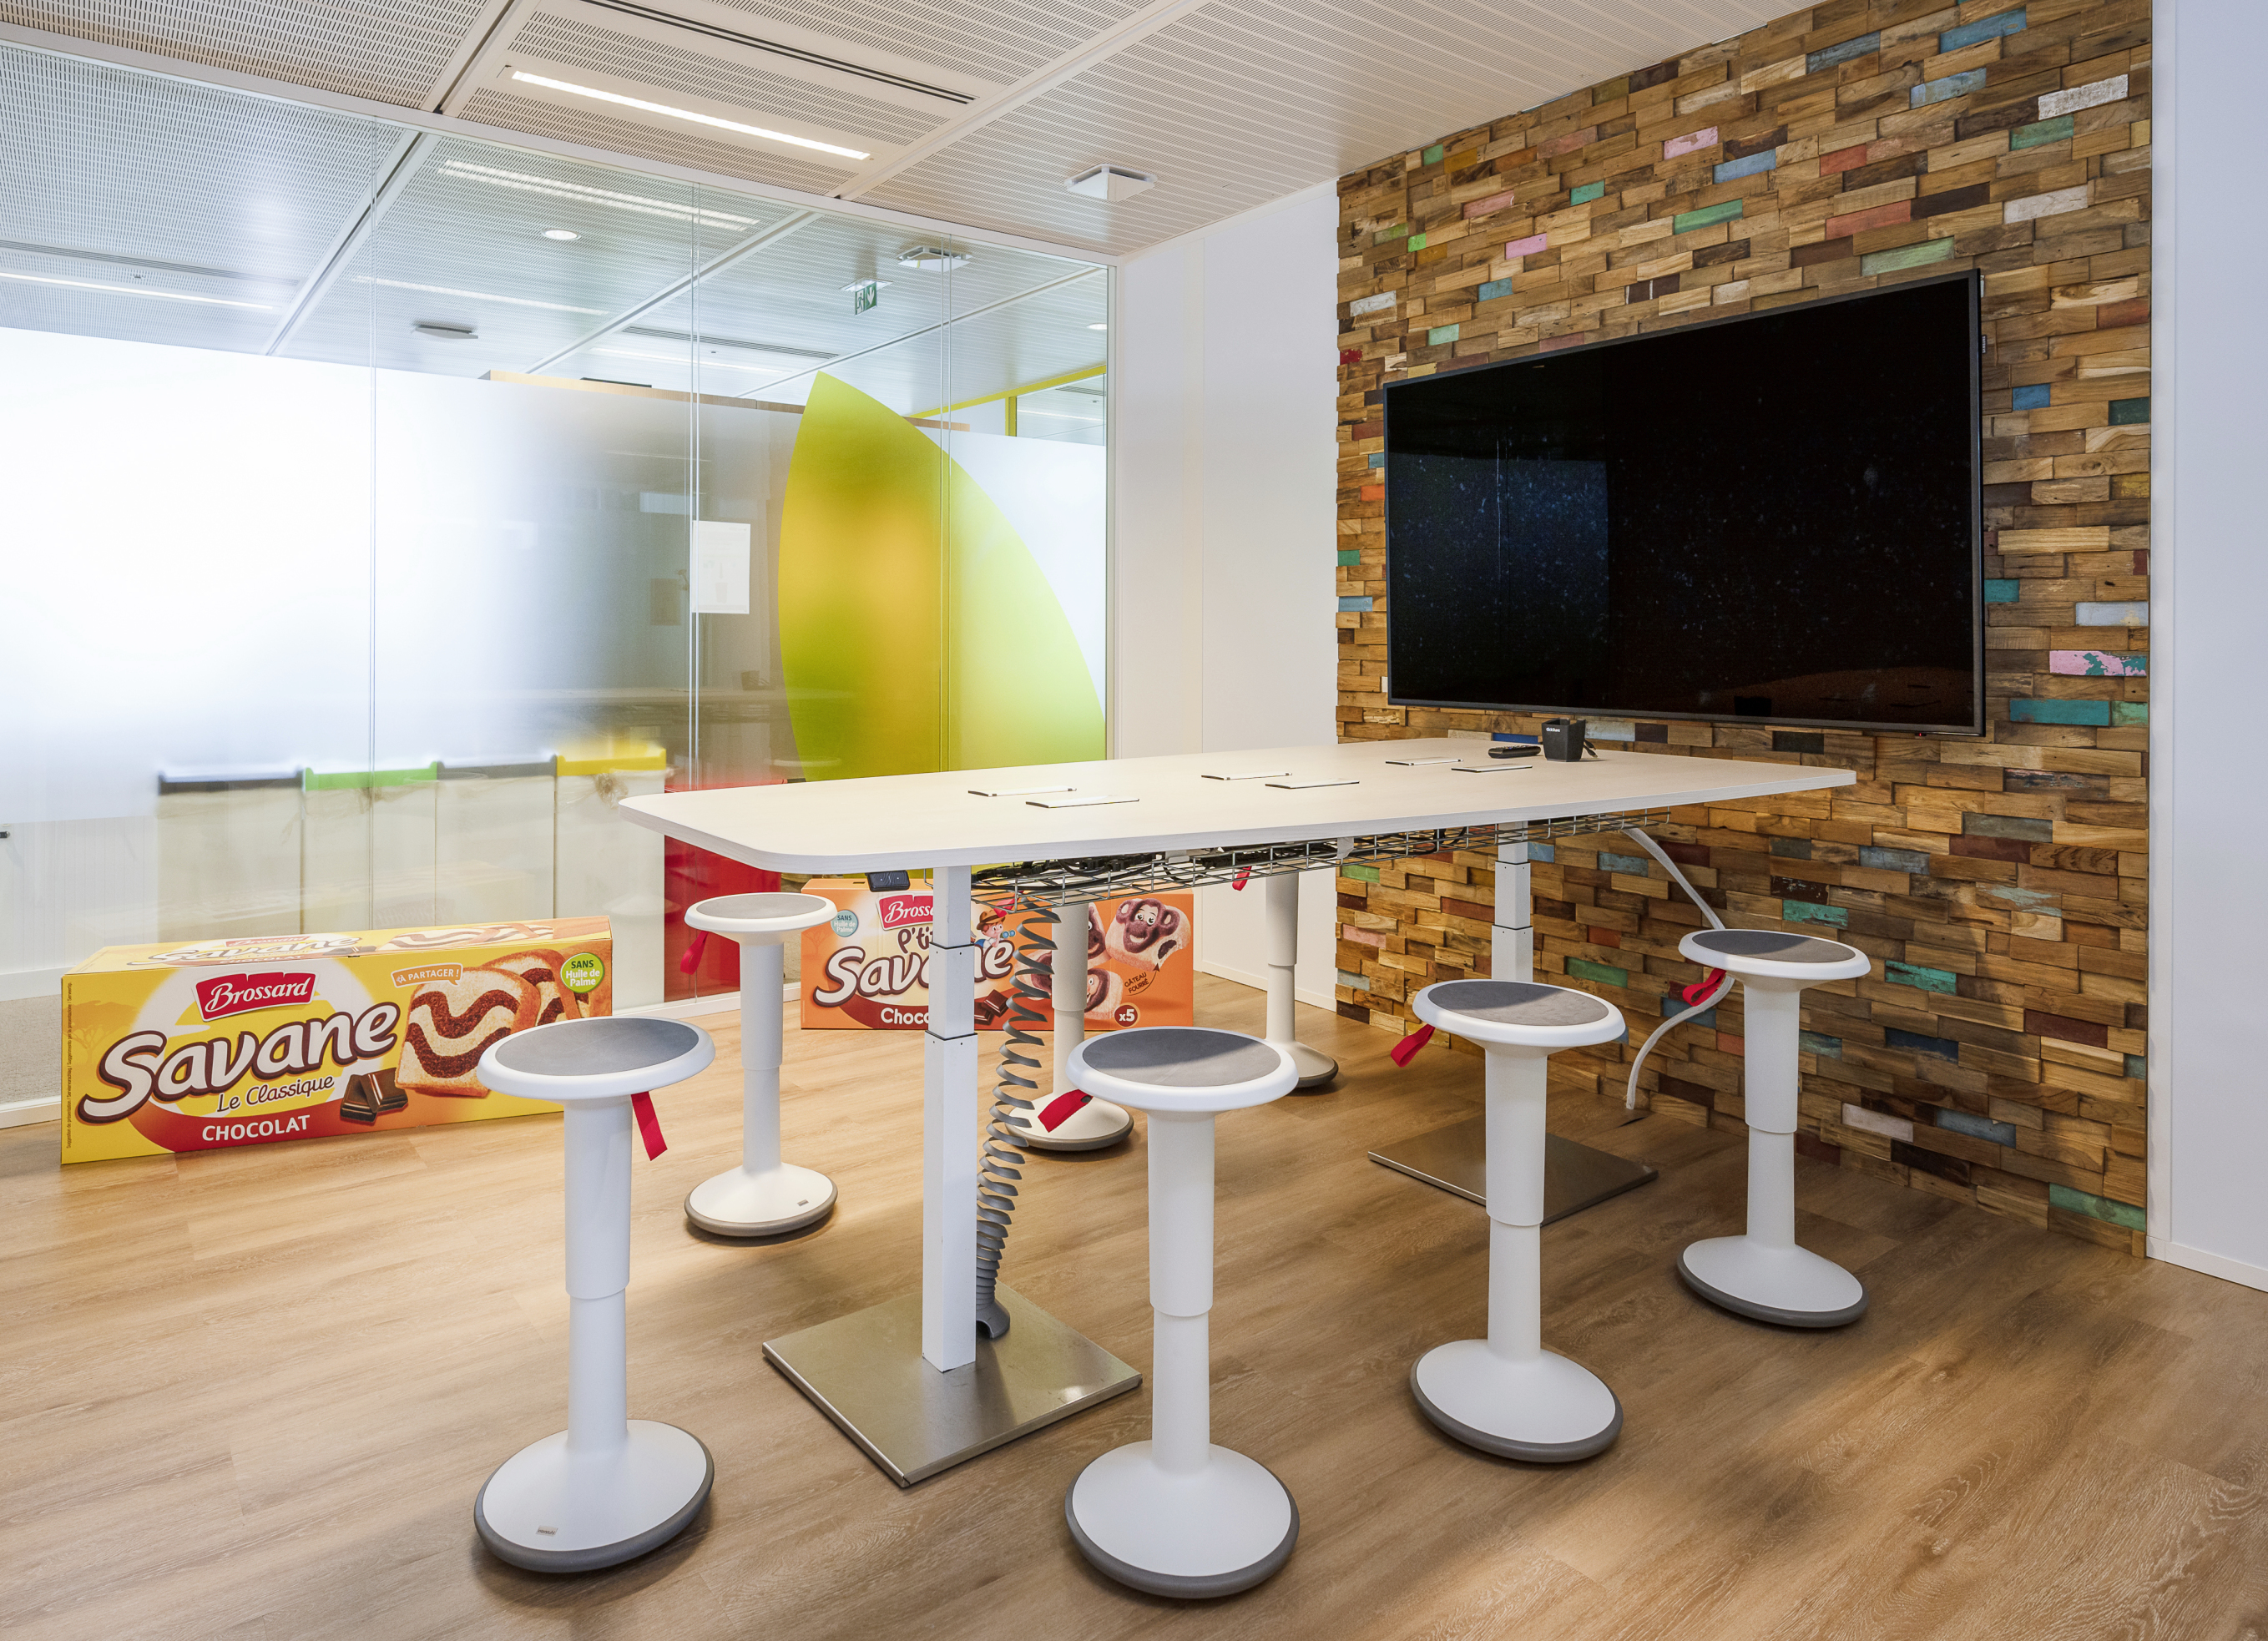 Les postes en flex office sont organisés autour de « territoires d’équipe », symbolisés par des codes couleur. Chaque zone dispose de ses propres salles de réunion en plus des espaces mutualisés. 